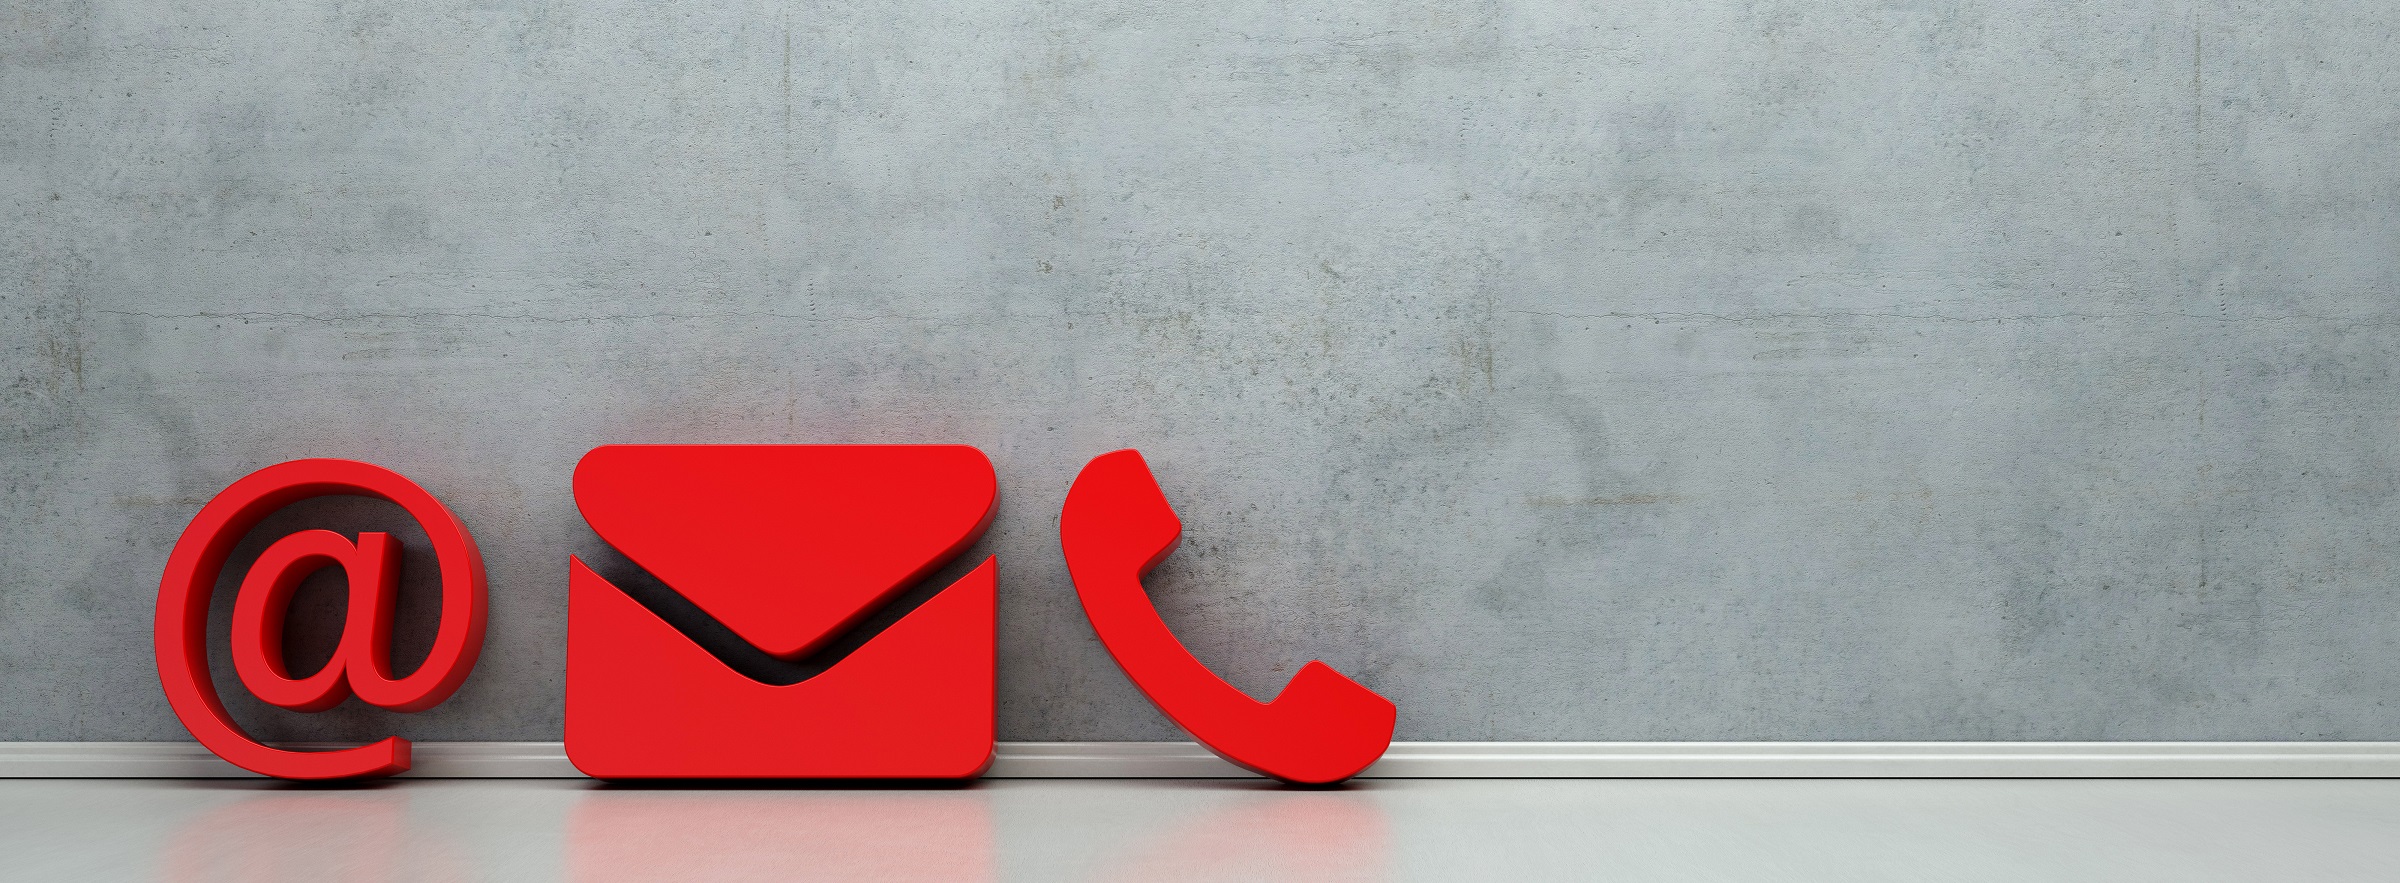 グレーの背景に赤いアットマークとメールと電話のマークが並べられている